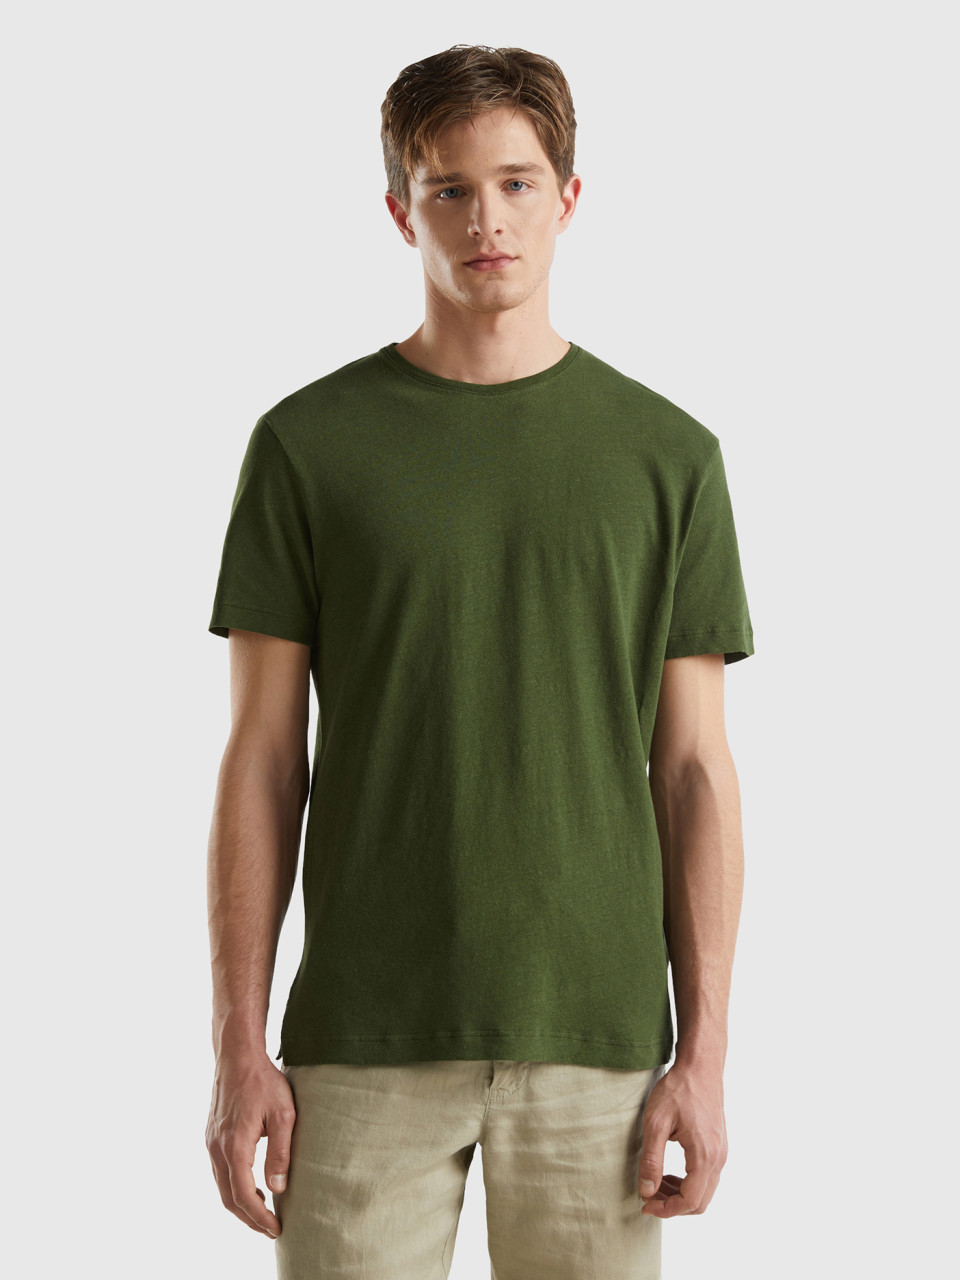 Benetton, T-shirt In Linen Blend, Military Green, Men